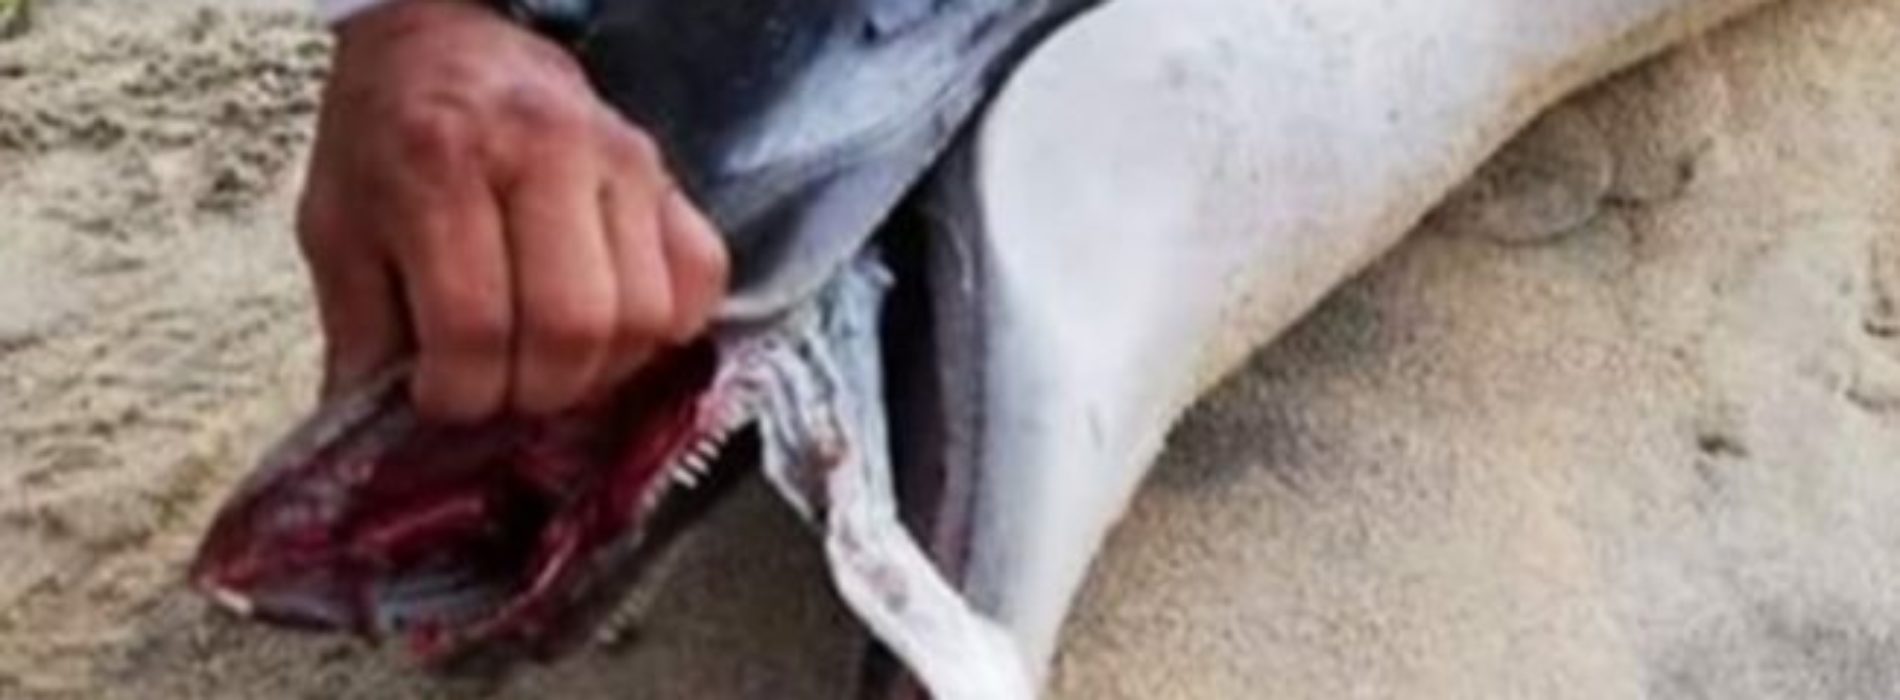 Delfín se asfixia con pañal; aparece muerto en playa de
Oaxaca